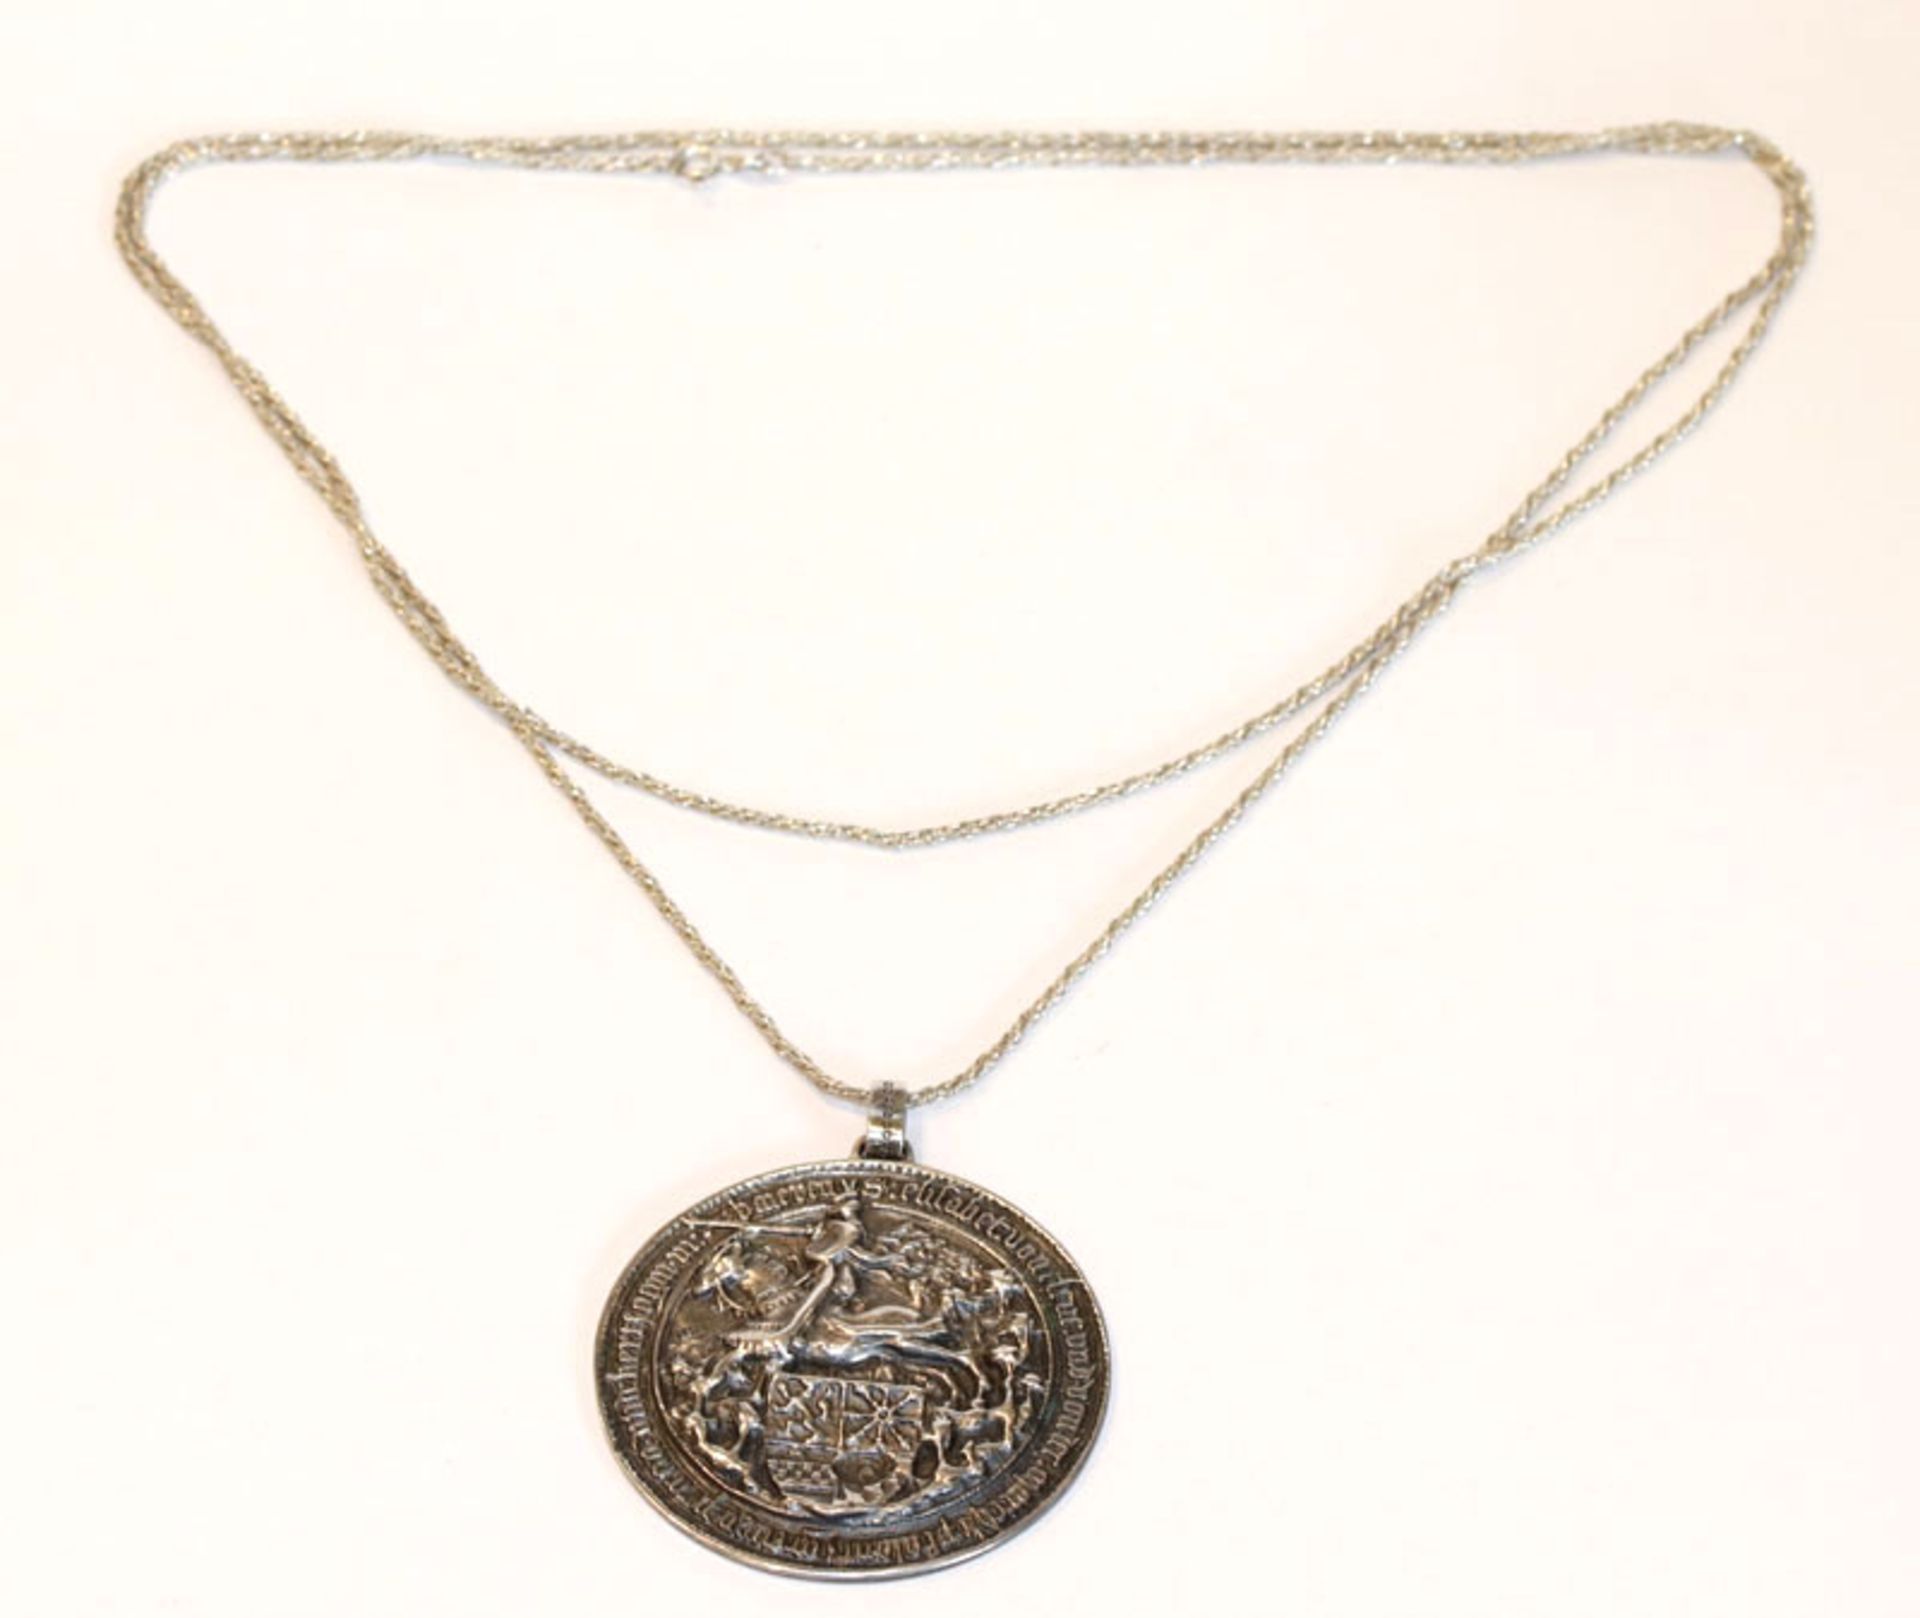 Silberkette, L 100 cm mit rundem Anhänger, reliefiertem Ritter zu Pferd und Wappendekor, D 5 cm